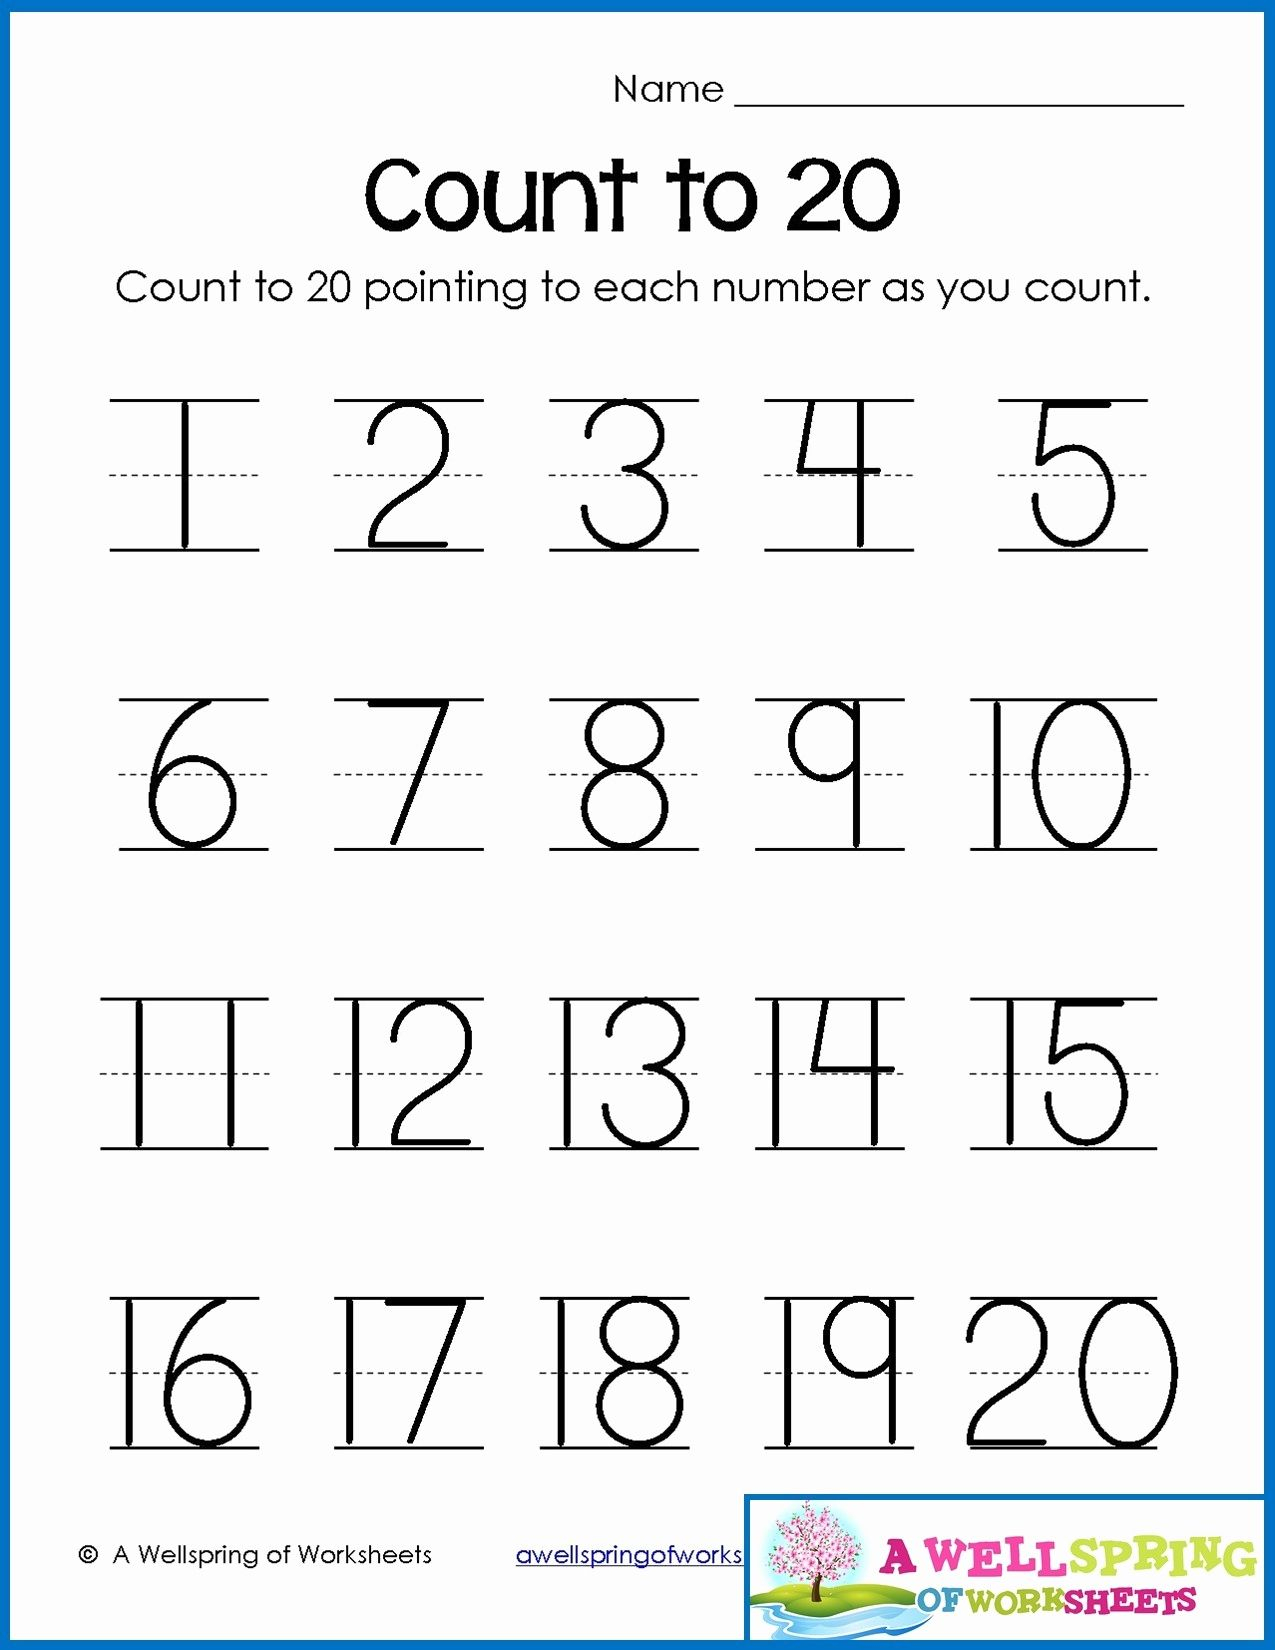 numbers-1-20-online-pdf-worksheet-free-printable-number-counting